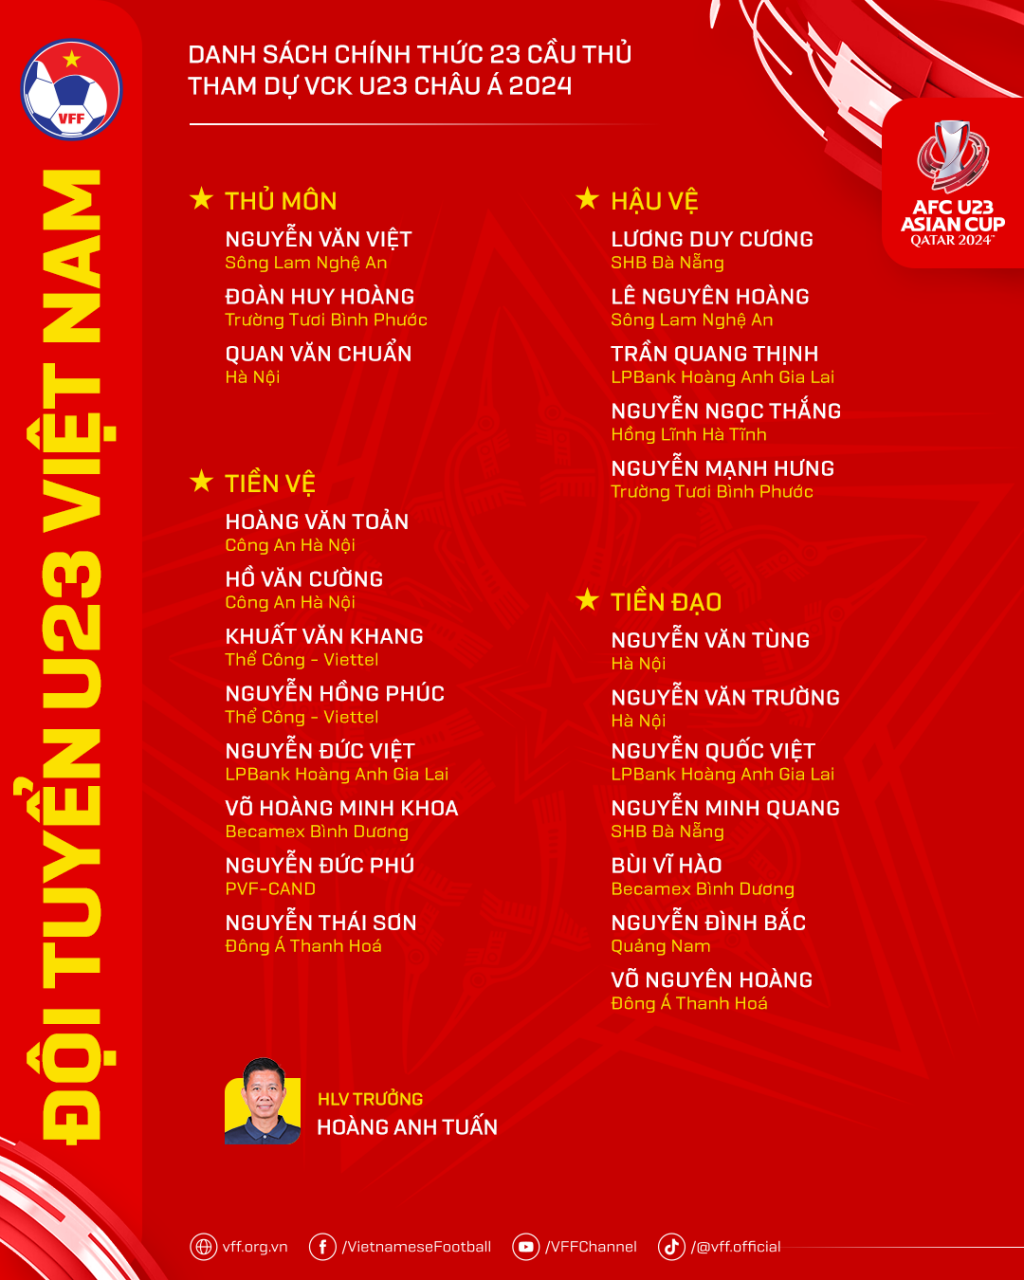 Công bố danh sách 23 cầu thủ tham dự Vòng chung kết U23 châu Á năm 2024